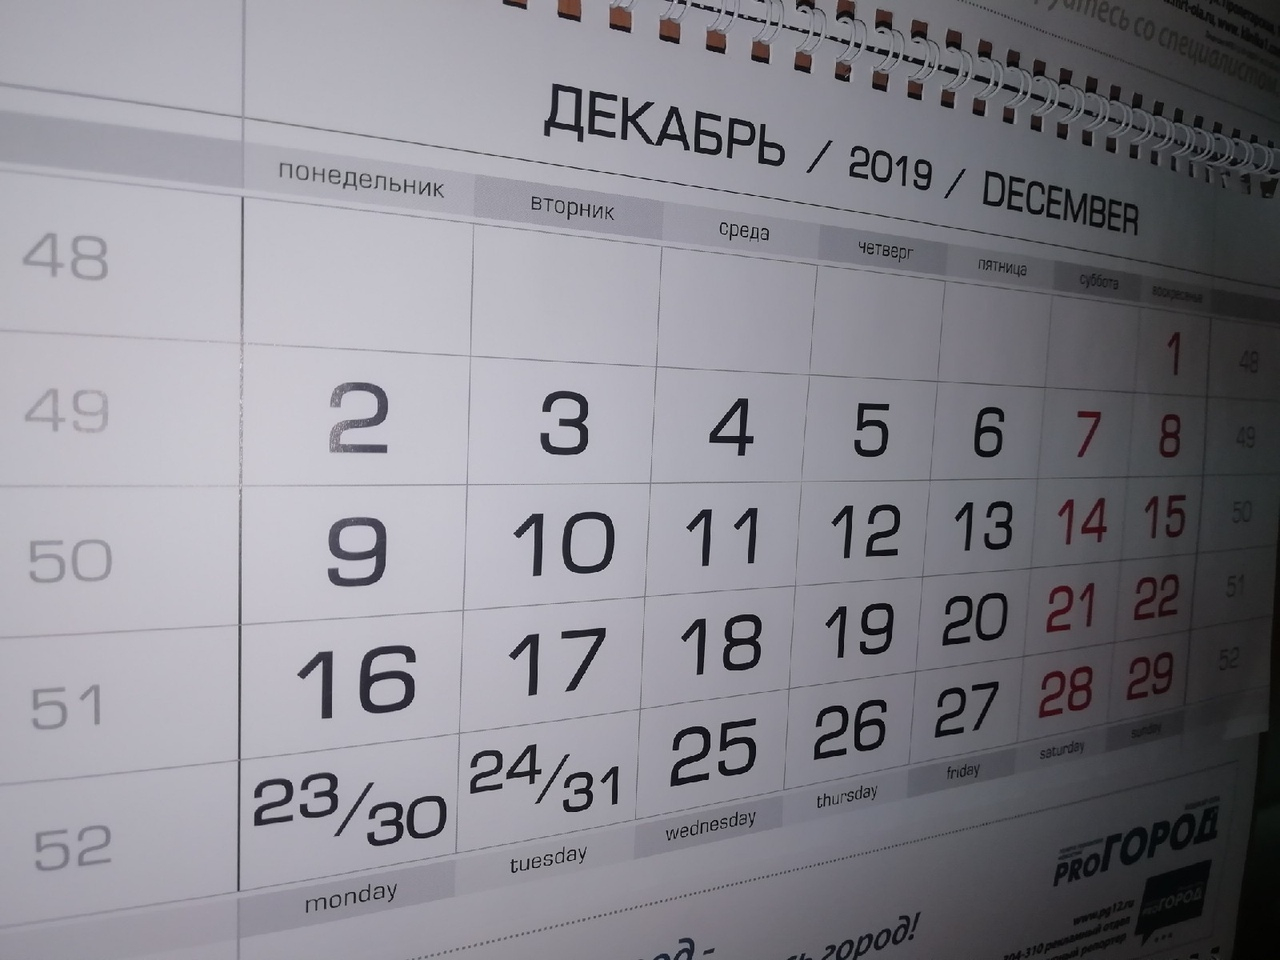 Глава Марий Эл рассказал, будет ли 31 декабря выходным днем